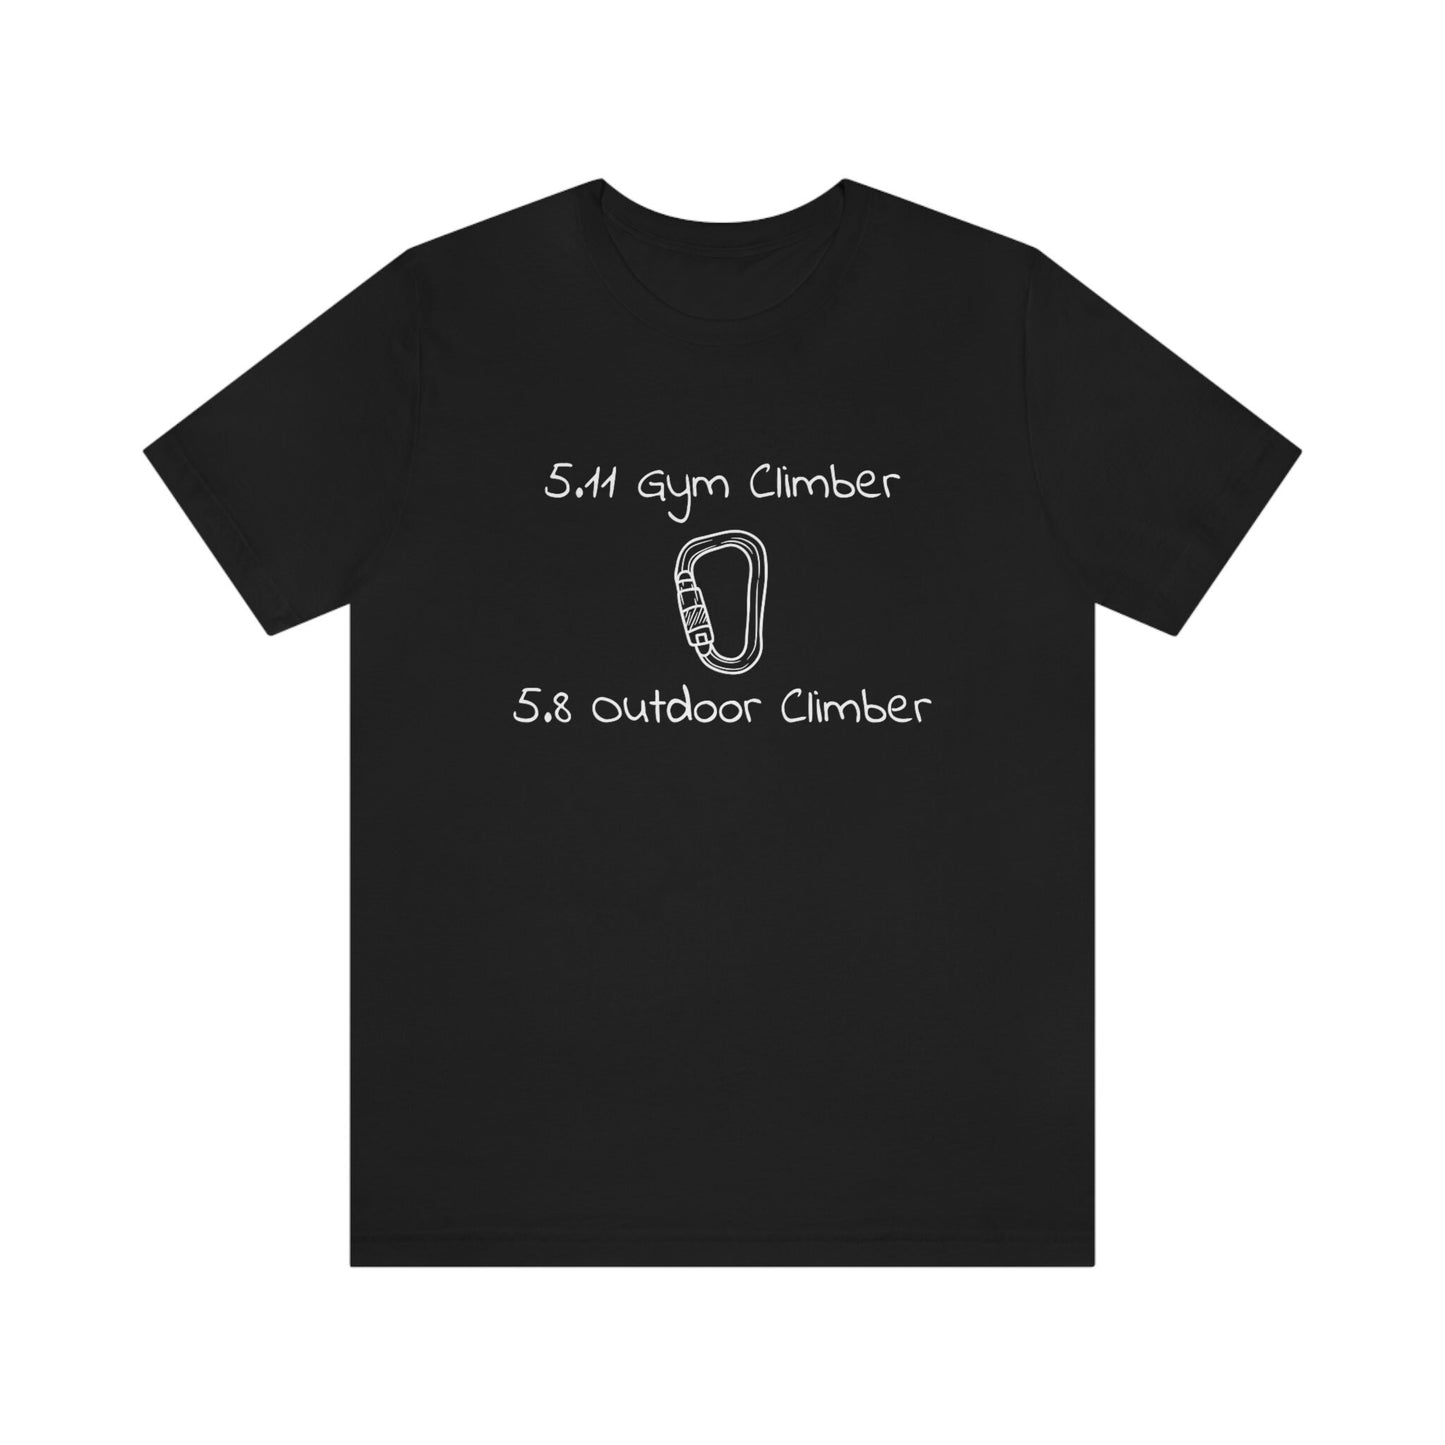 5.11 Gym Climber | 5.8 Outdoor Climber T-Shirt